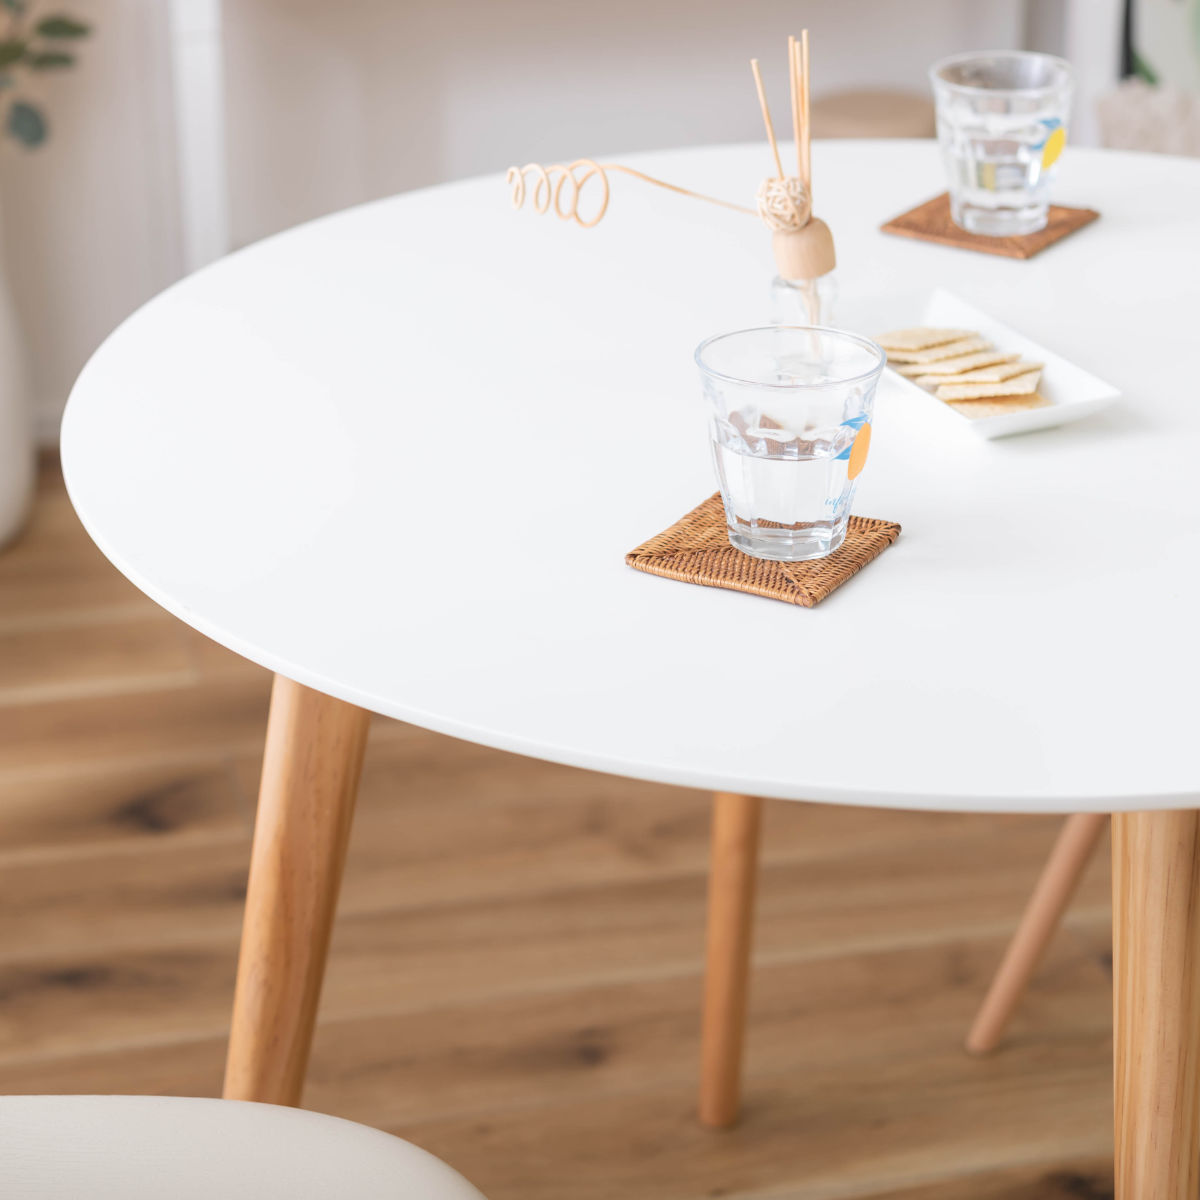 49 丸テーブル ダイニングテーブル 北欧風 カフェテーブル 丸テーブル 